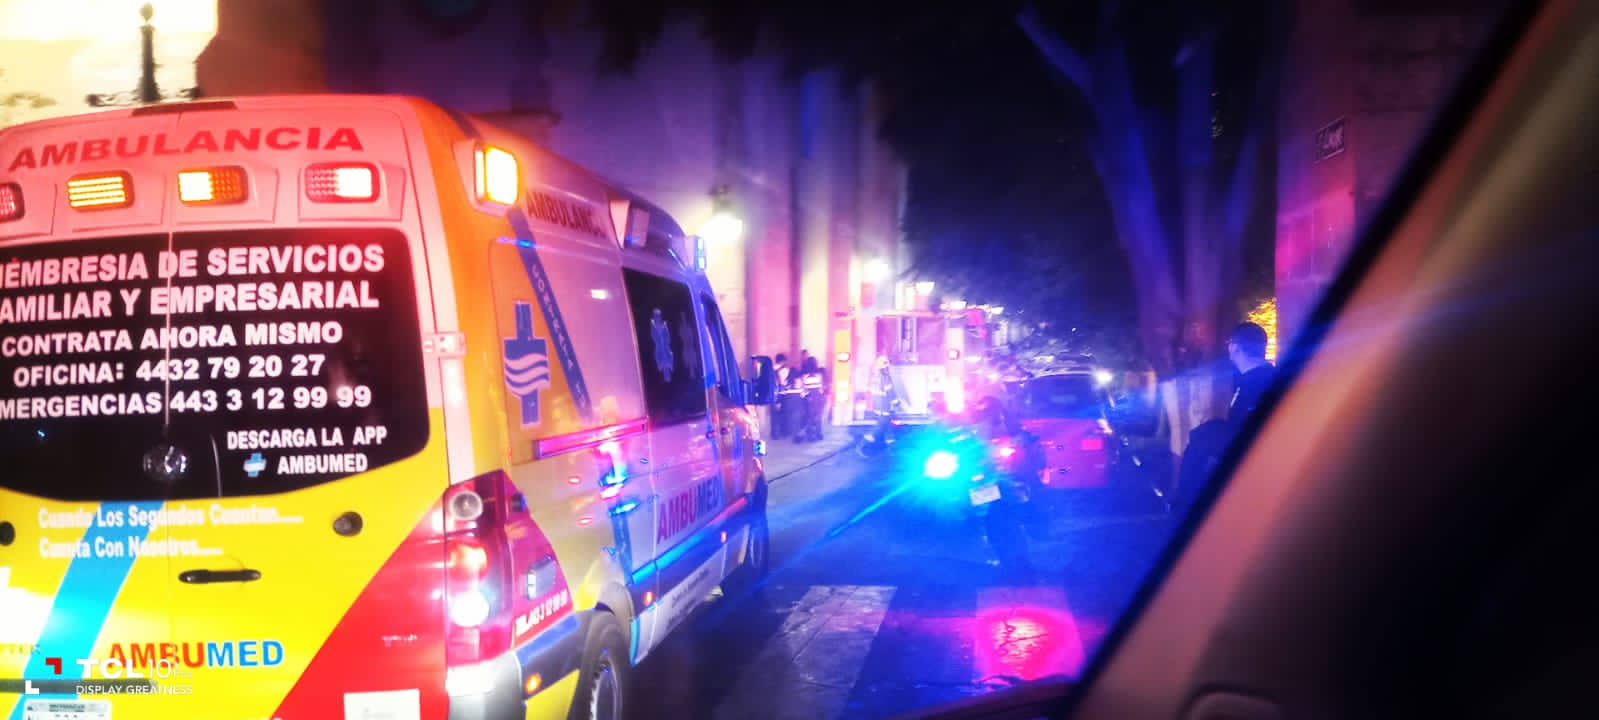 Incendio en altar moviliza a los servicios Paramédicos en calzada San Diego